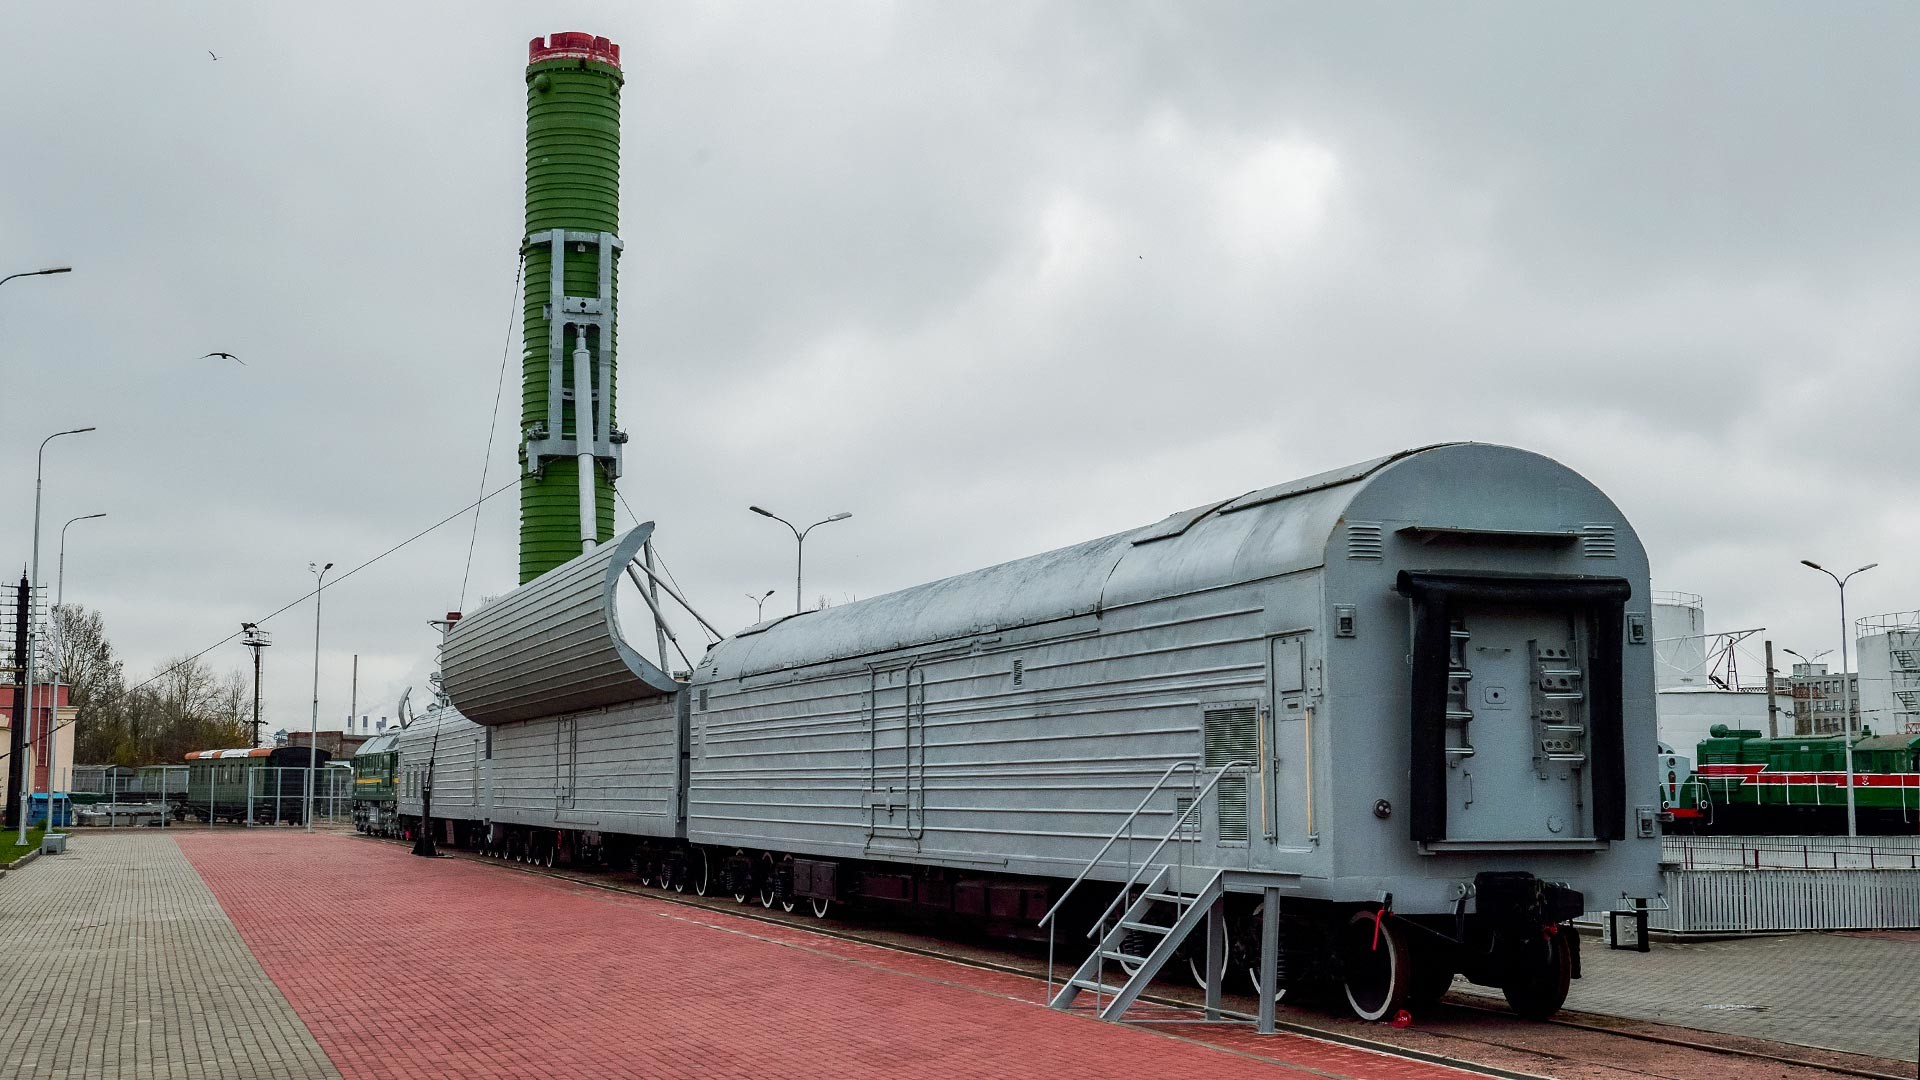  Боен железопътен ракетен комплекс (БЖРК) 